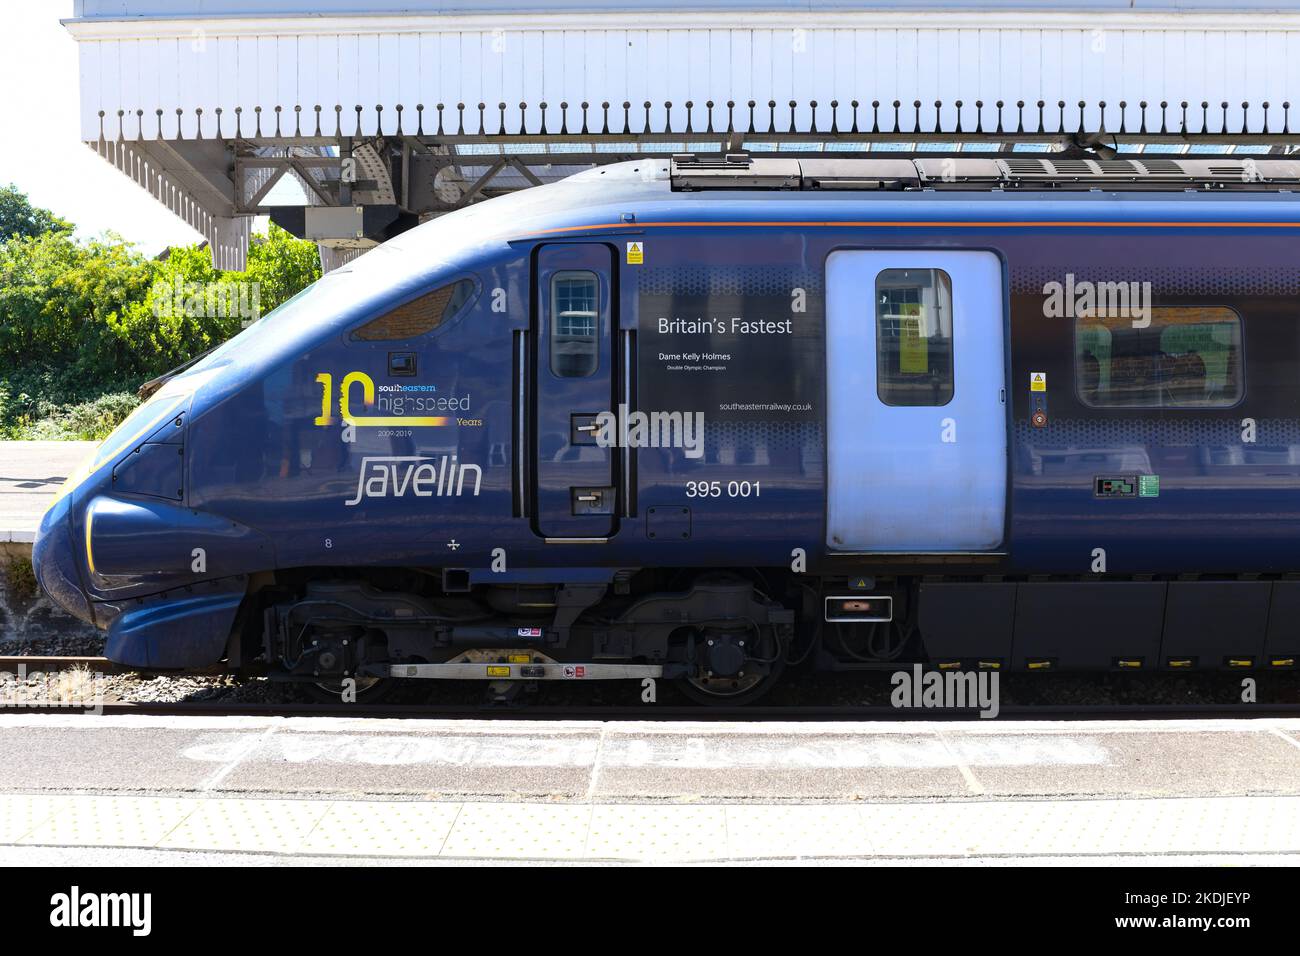 Javelin classe 395001 treno chiamato Britains digiunato Dame Kelly Holmes alla stazione di Margate, Kent, Inghilterra, Regno Unito Foto Stock